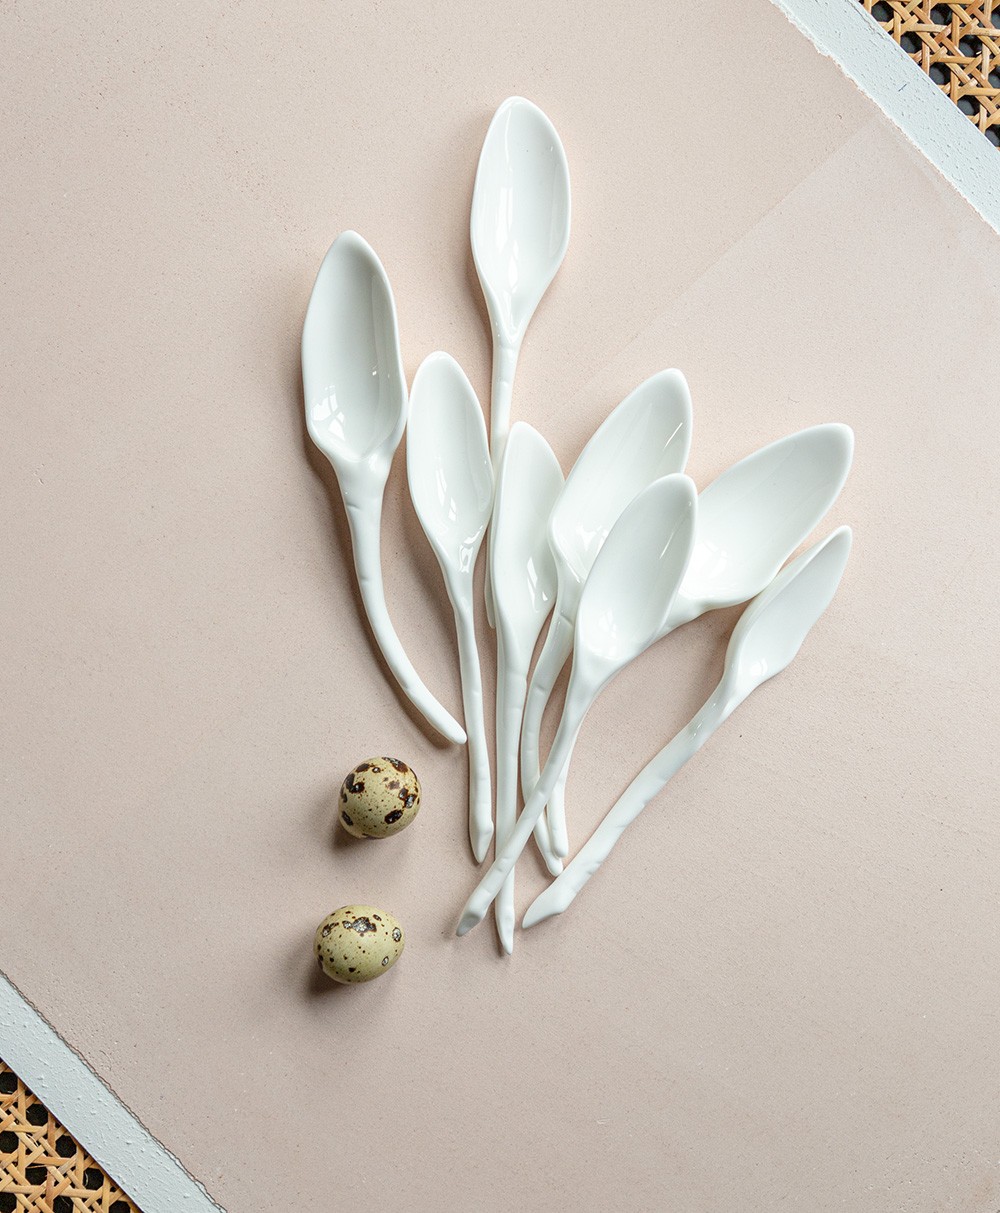 Hier abgebildet die Geschirrserie Perfect Imperfection von Roos van de Velde mit Serax - RAUM concept store